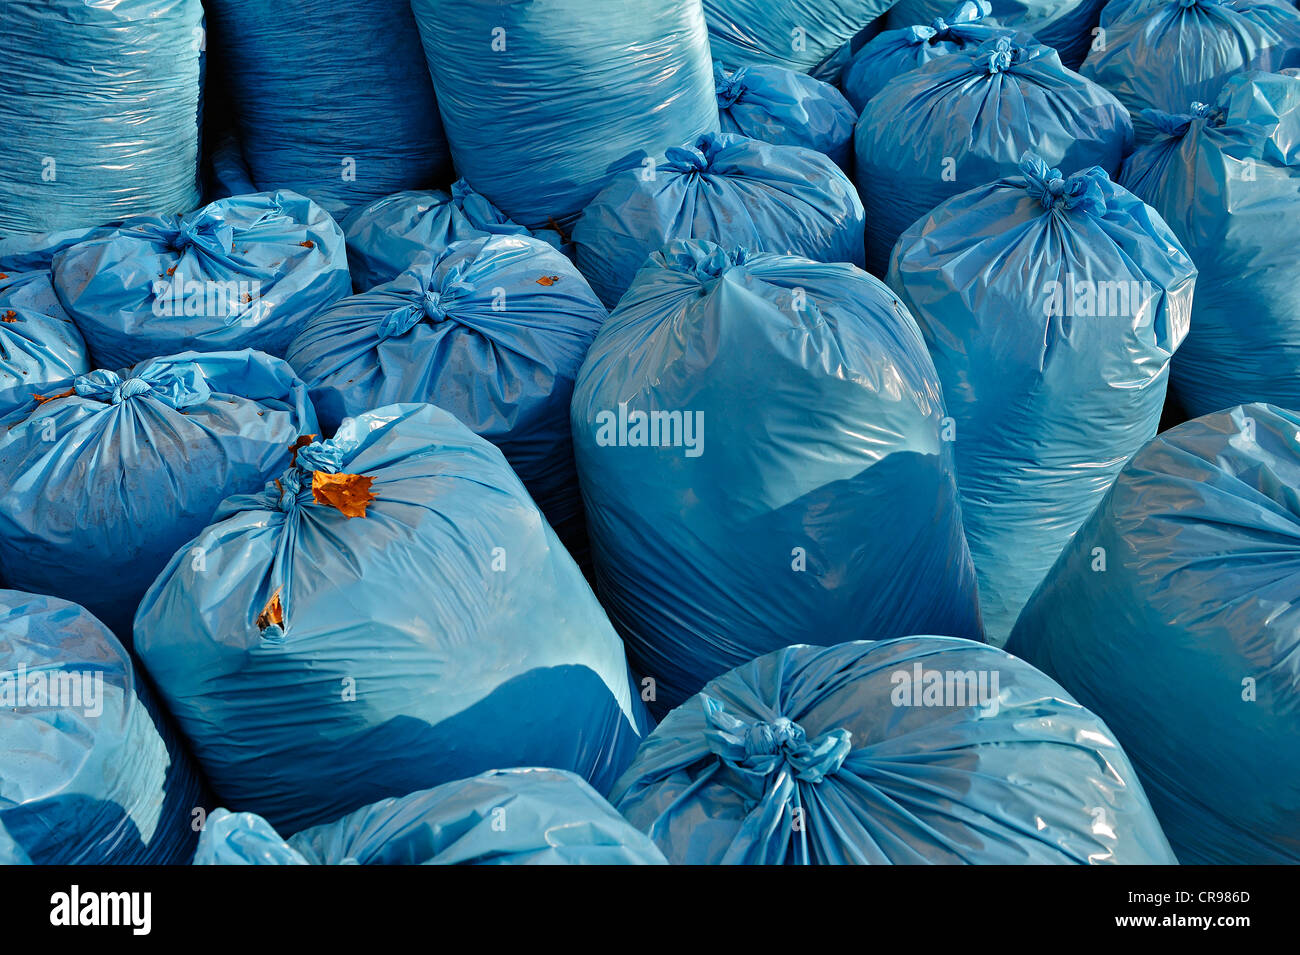 Llenaron bolsas de basura de plástico azul claro, Baviera, Alemania, Europa Foto de stock